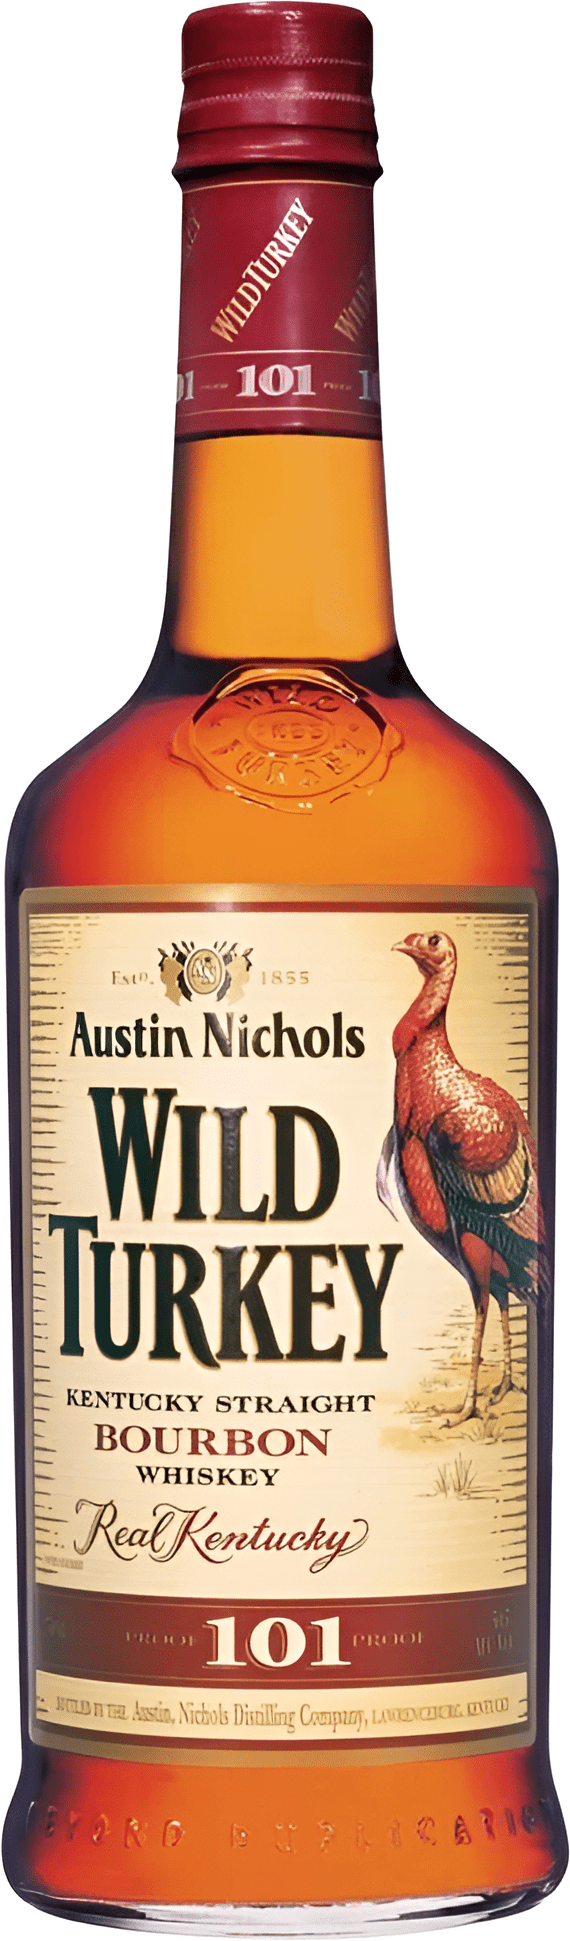 Wild Turkey 101 1l 50,5%